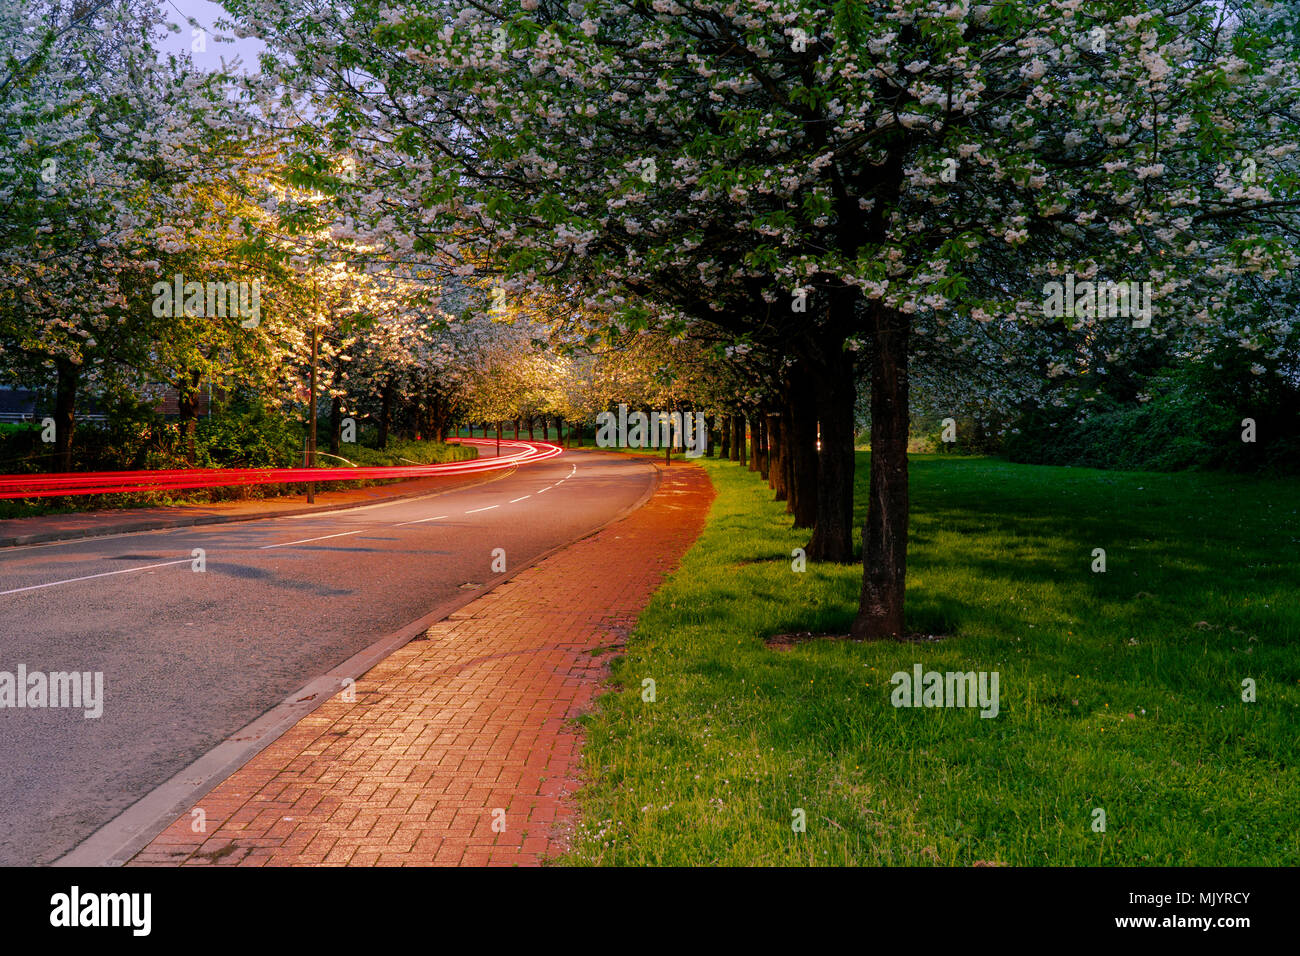 Light trails de voitures sur une rue avec des arbres au printemps. Peinture de lumière. Banque D'Images